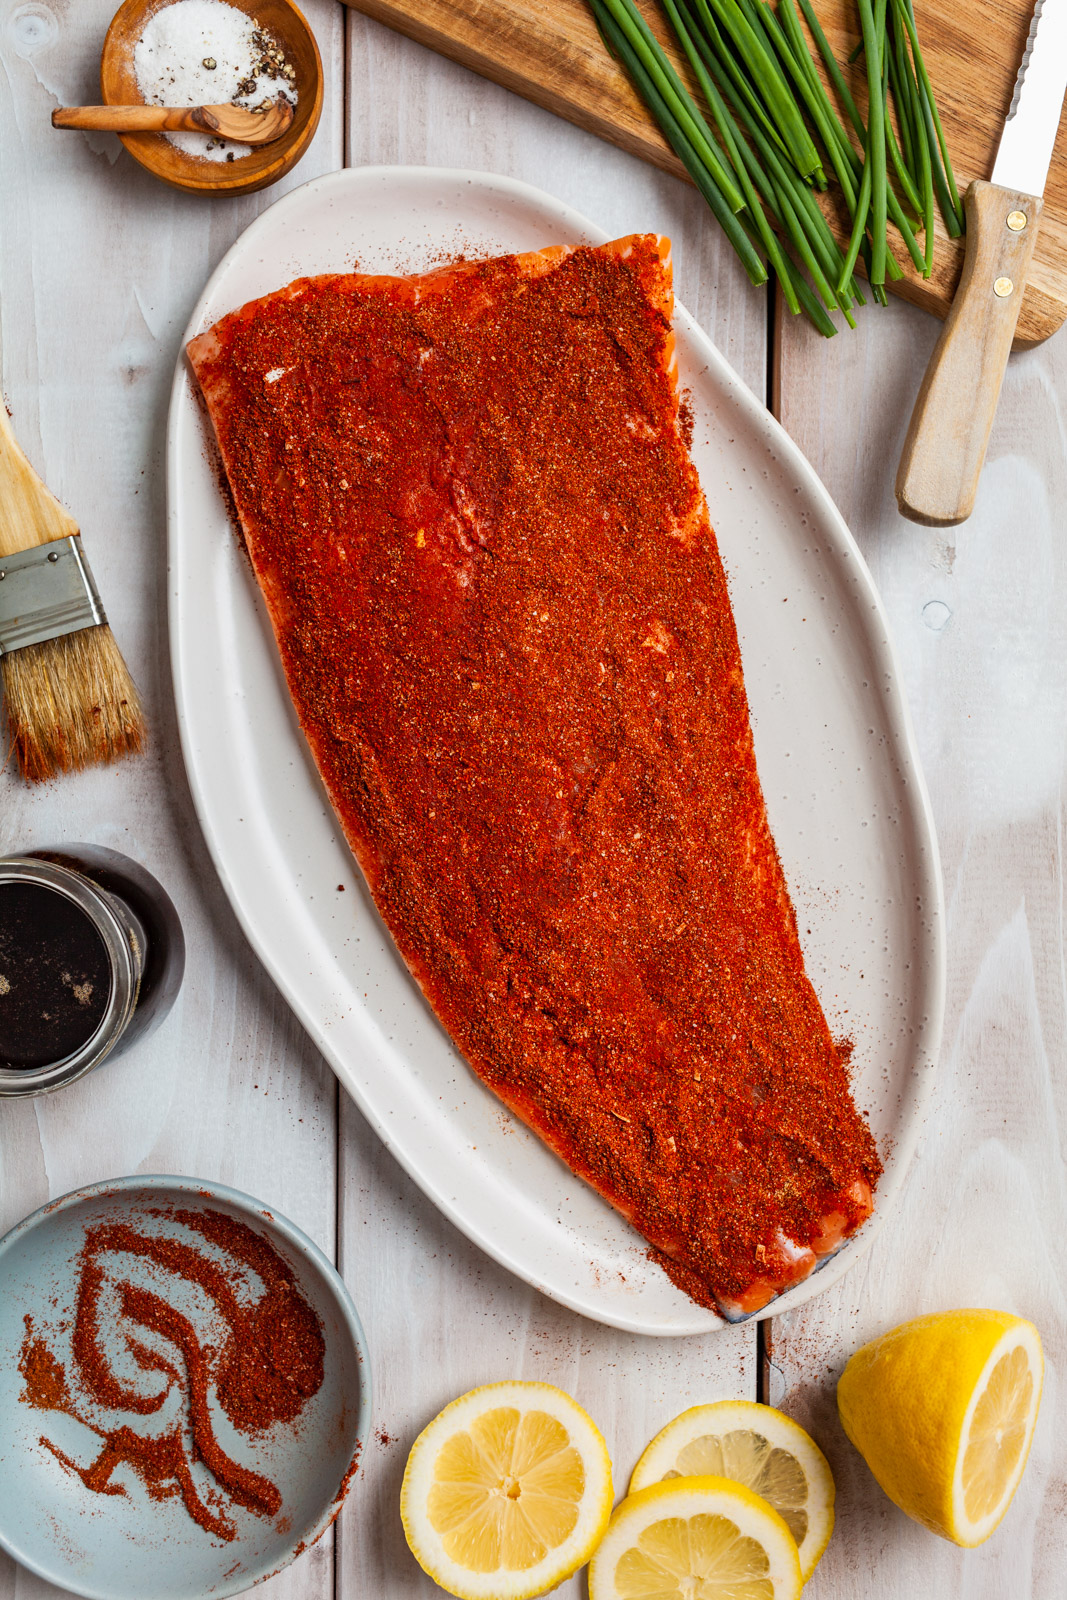 Spiced Cedar Plank Salmon With a Maple Bourbon Glaze